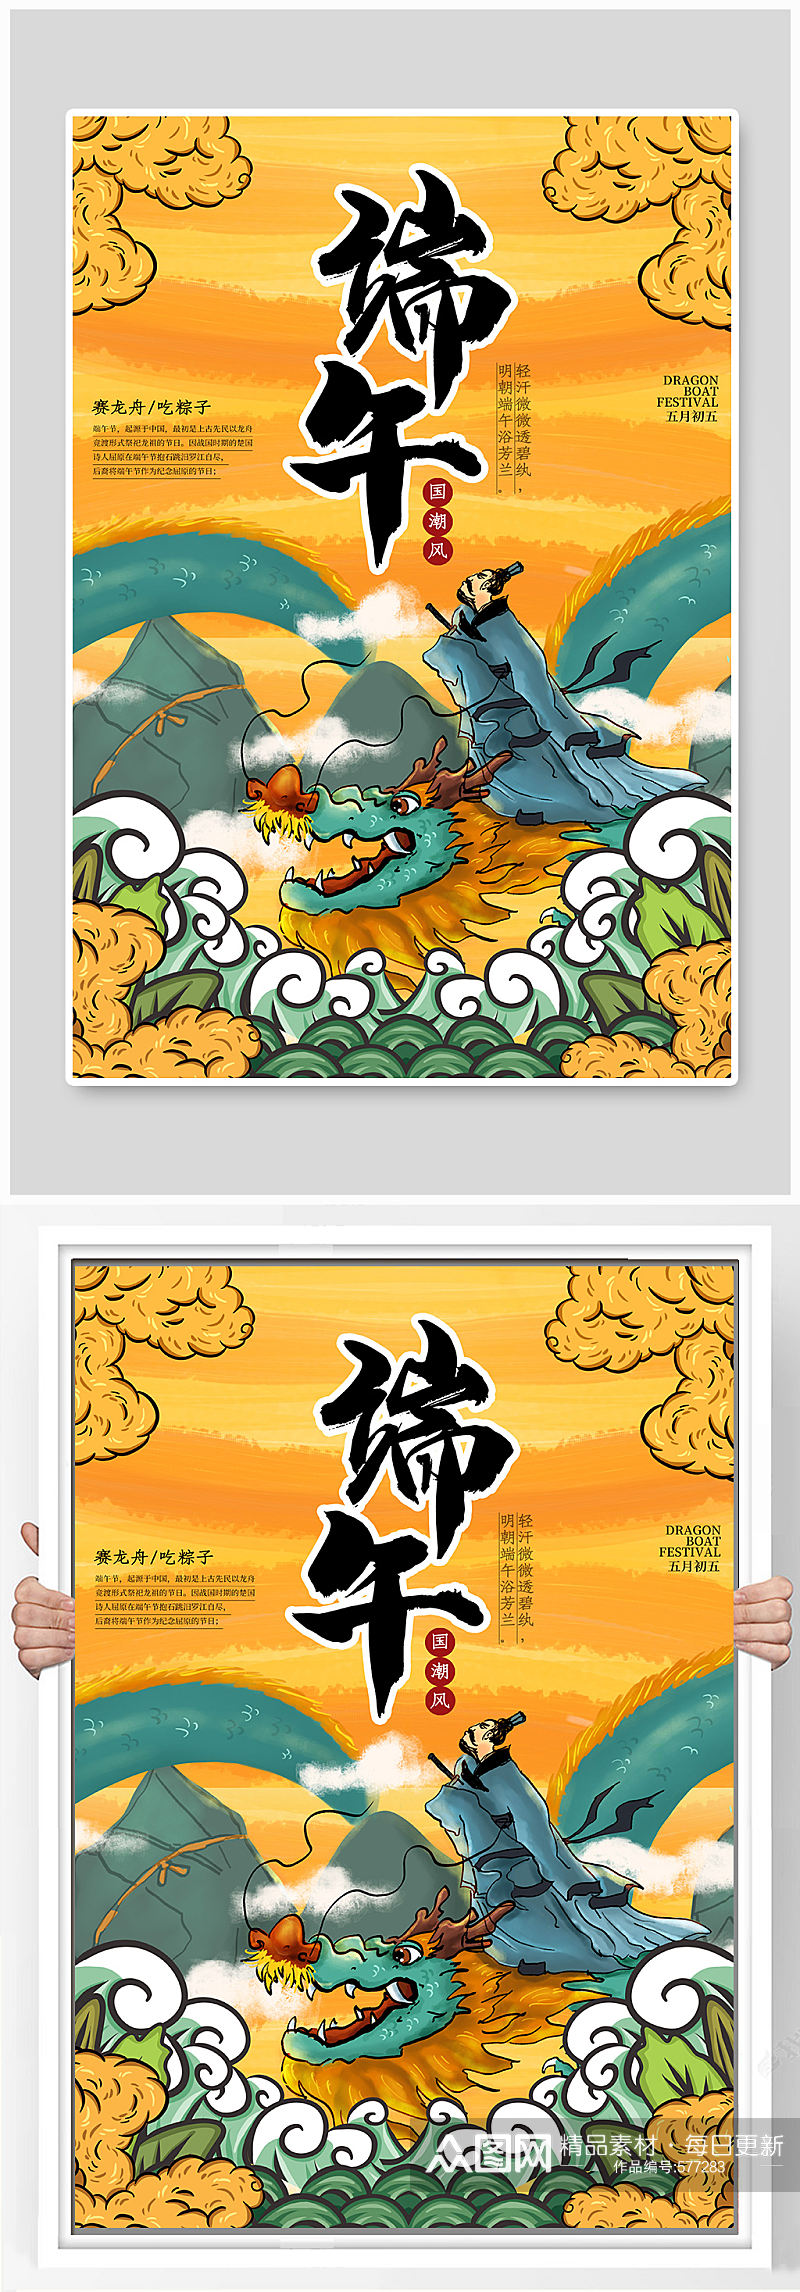 中国传统端午节海报素材